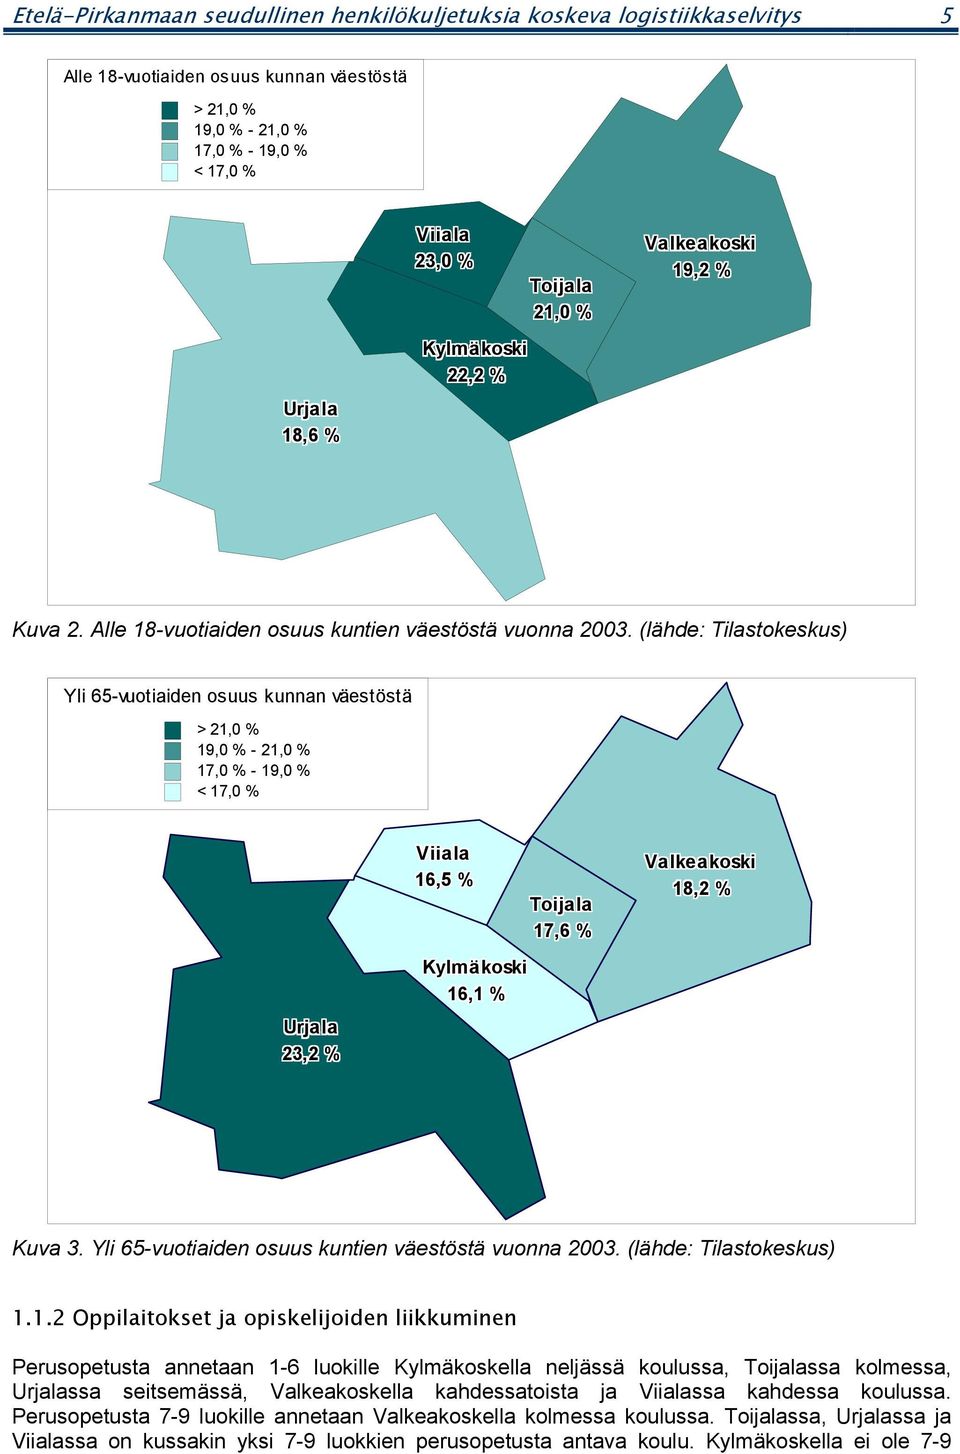 (lähde: Tilastokeskus) Yli 65-vuotiaiden osuus kunnan väestöstä > 21,0 % 19,0 % - 21,0 % 17,0 % - 19,0 % < 17,0 % Urjala 23,2 % Viiala 16,5 % Toijala 17,6 % Kylmäkoski 16,1 % Valkeakoski 18,2 % Kuva